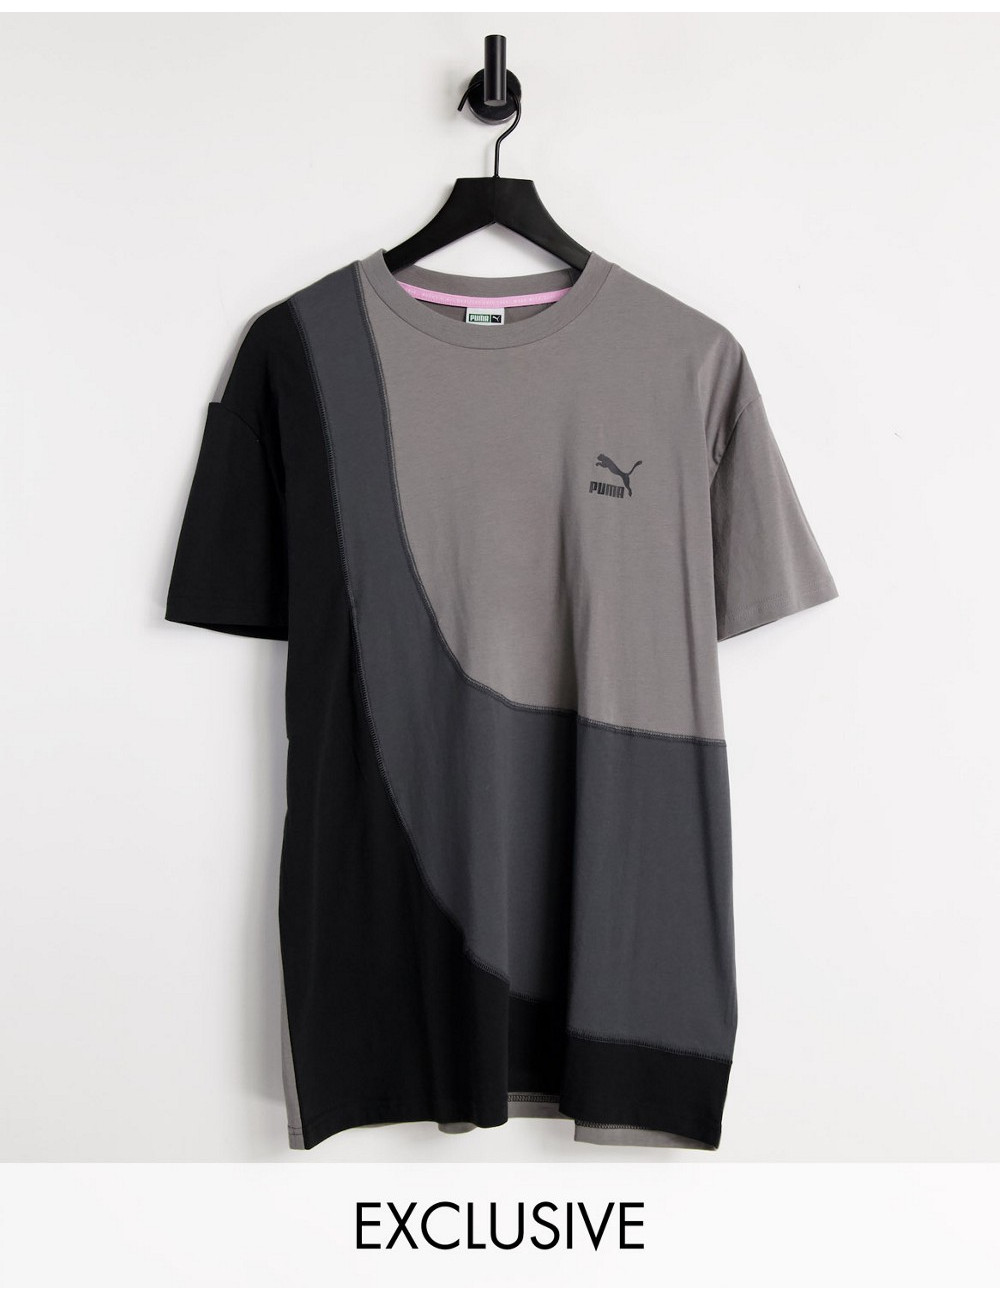 Puma convey t-shirt in grey...